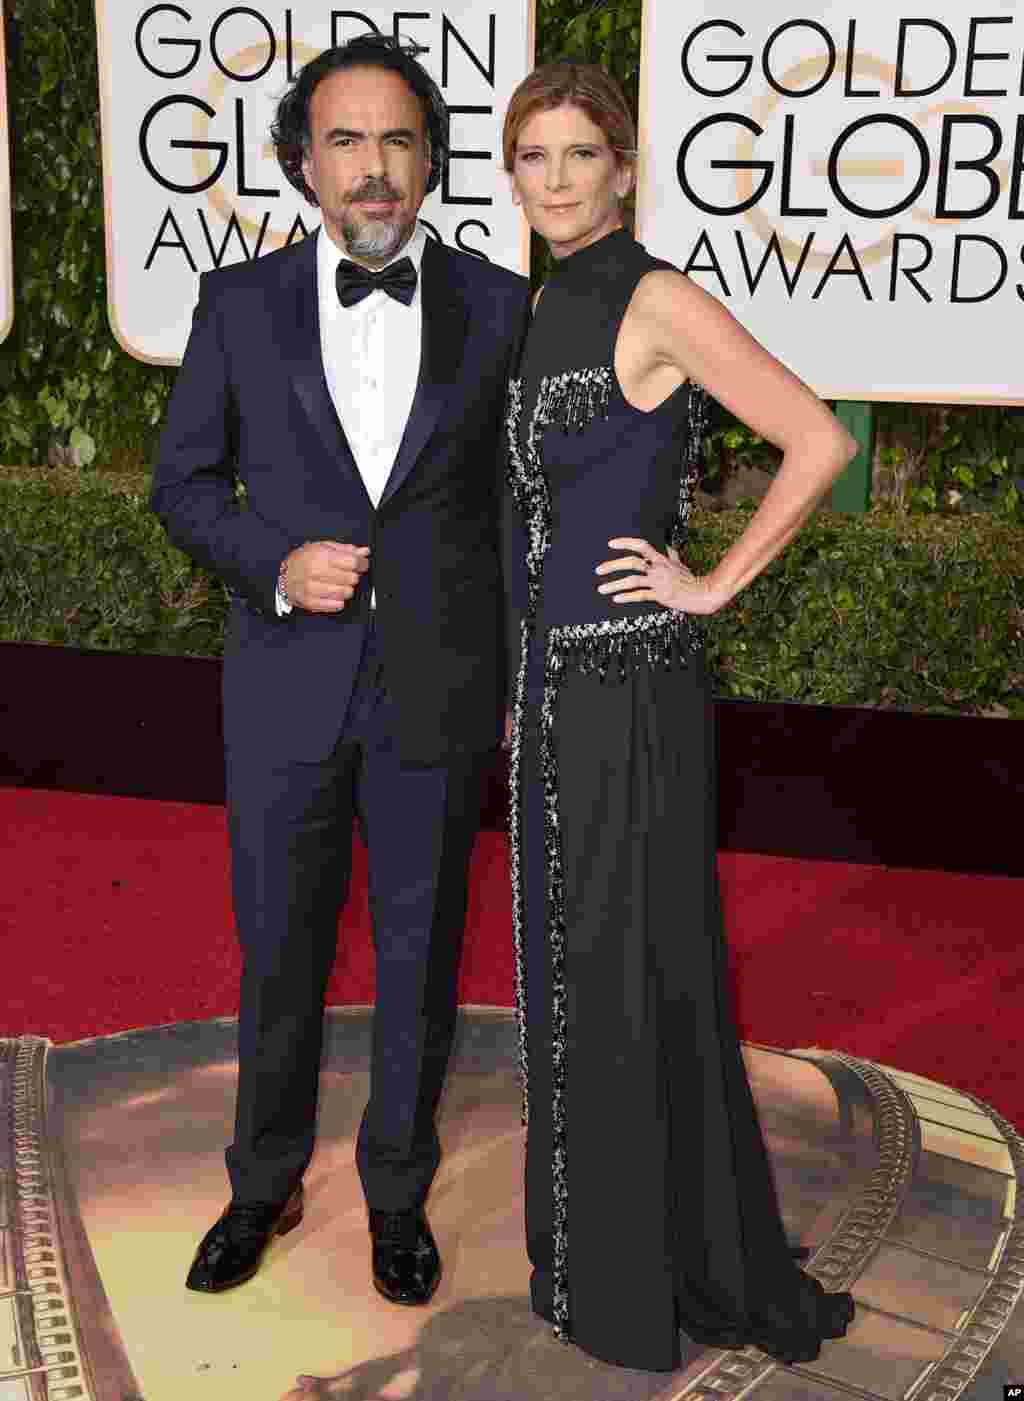 جایزه بهترین کارگردان گلدن گلوب ۲۰۱۶ به &quot;الخاندرو اینیاریتو&quot;، کارگردان مکزیکی برای فیلم بازگشته رسید. در عکس او و همسرش الادیا هاگرمن می بینید. 